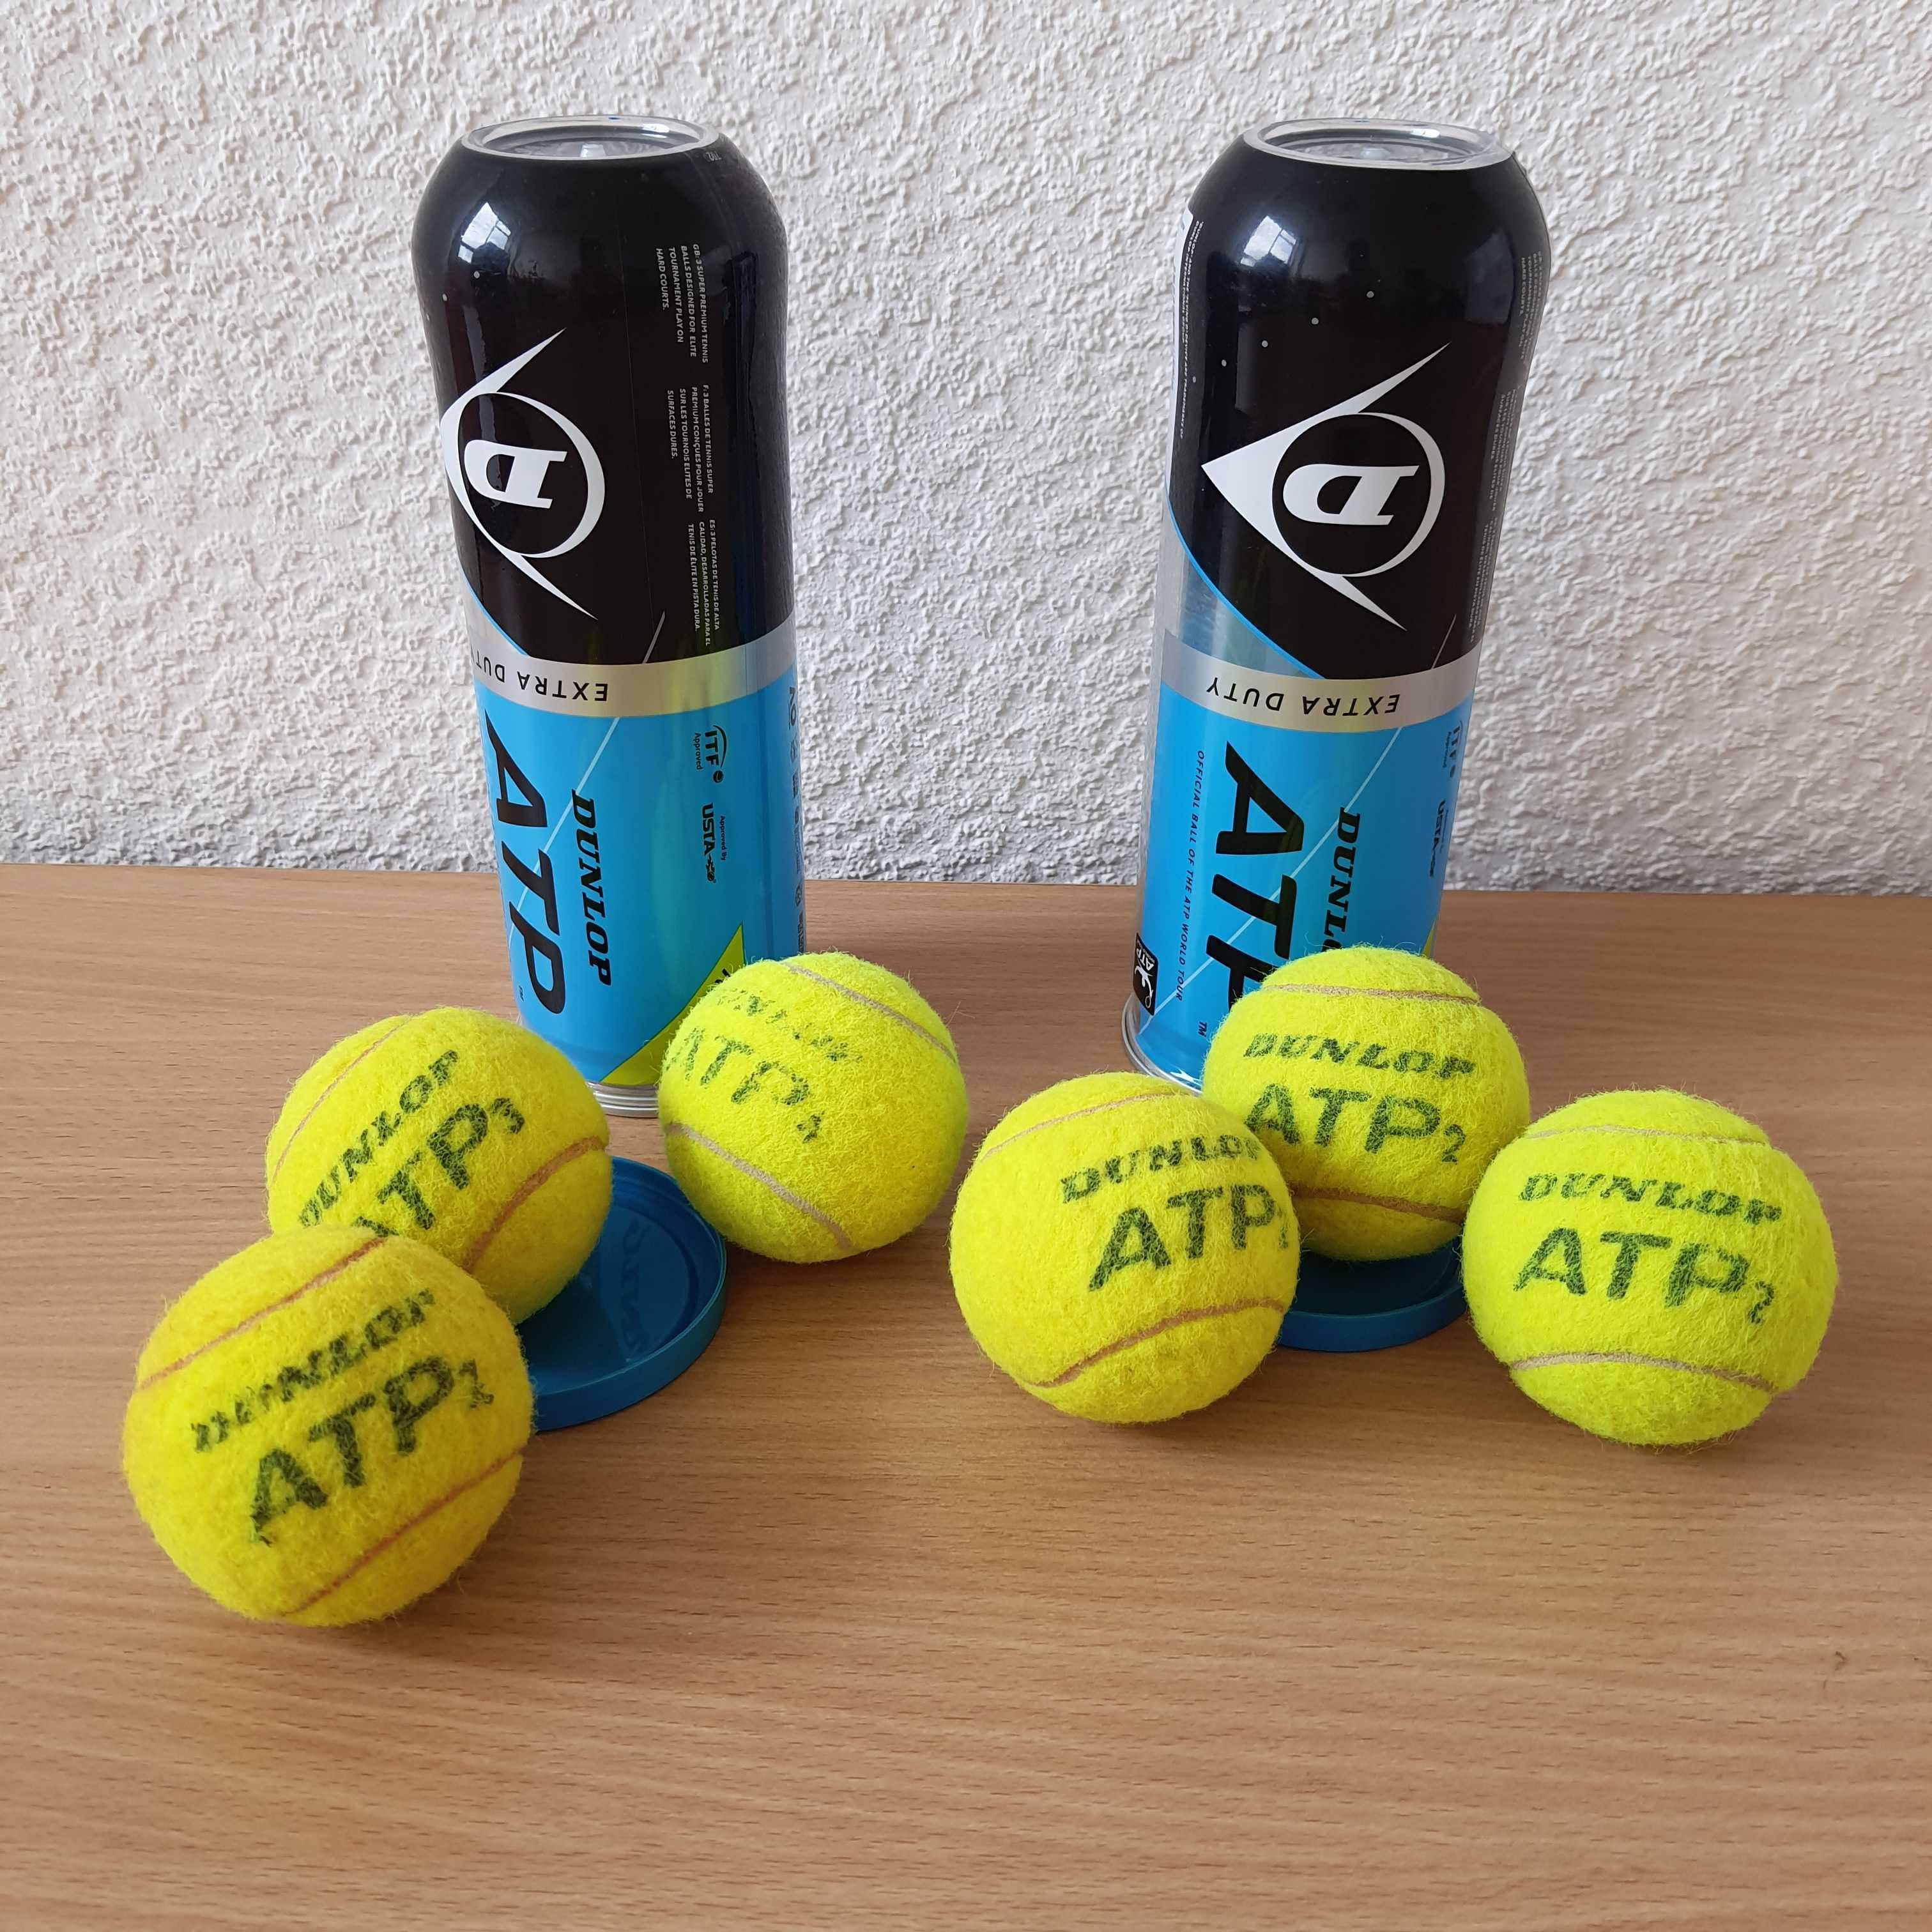 Теннисные мячи Babolat Dunlop новые и в отличном состоянии в тубе